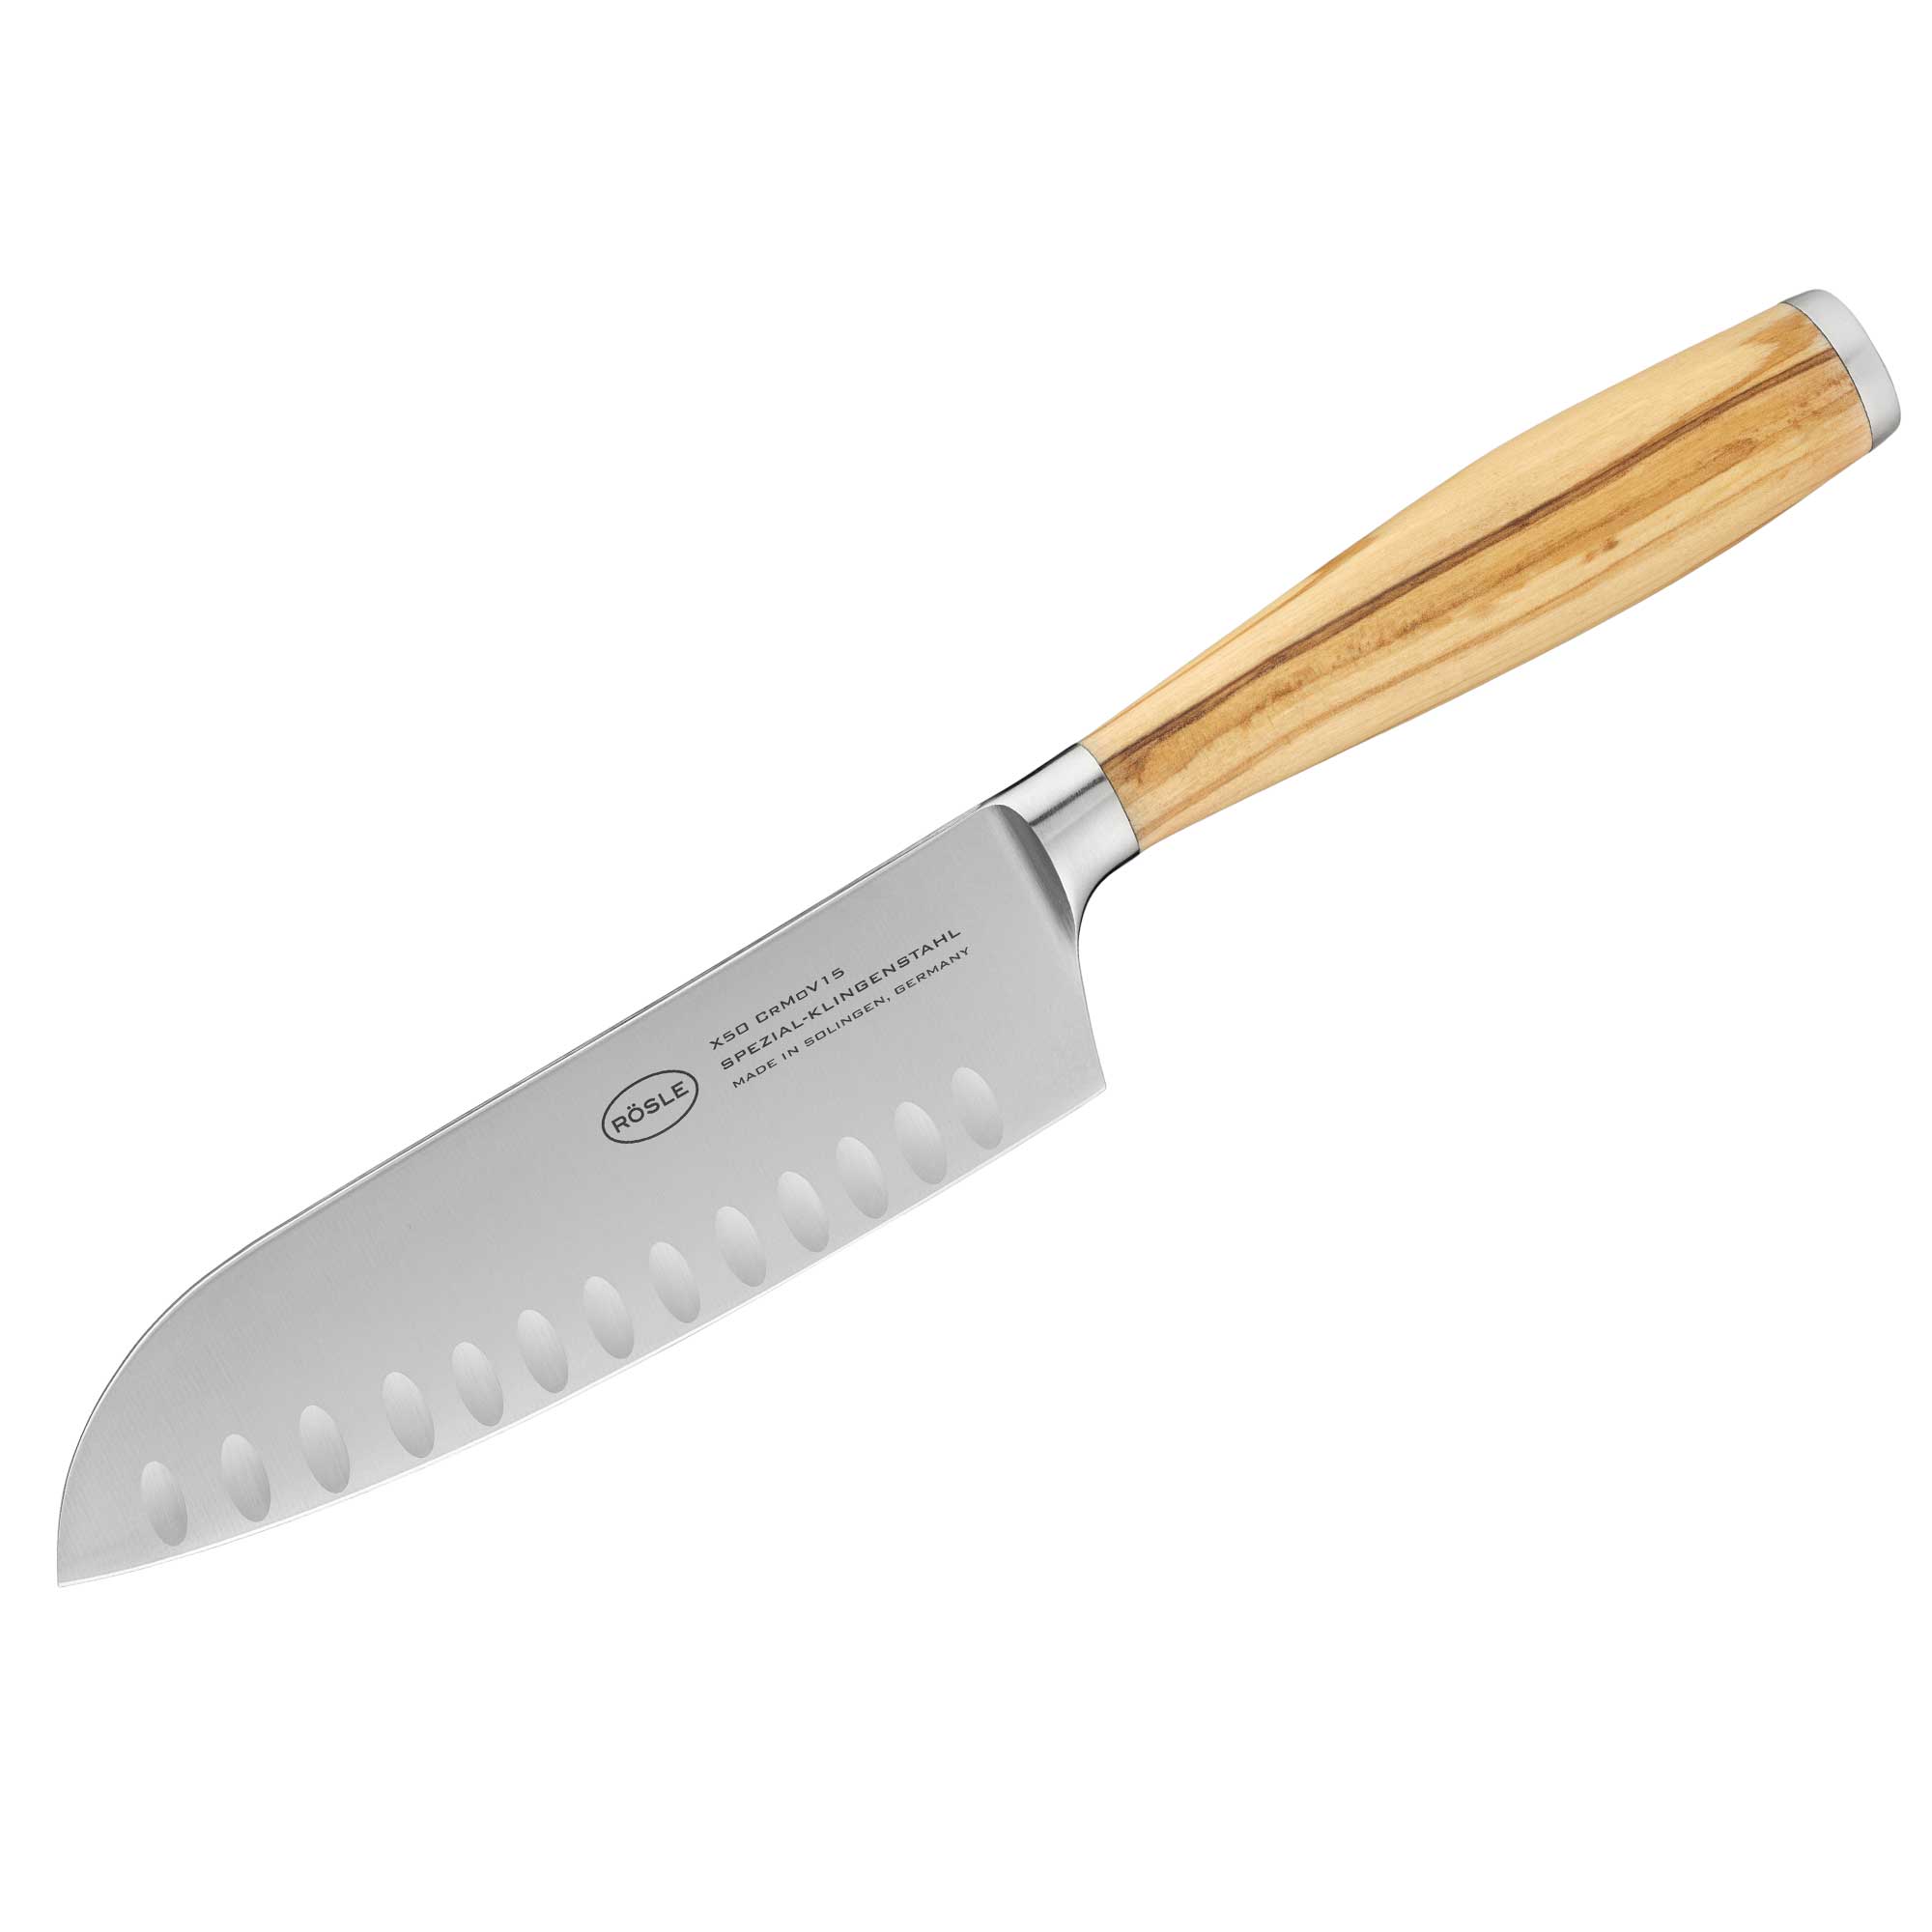 Santoku knife Artesano 16,5 cm | 6.5 in.